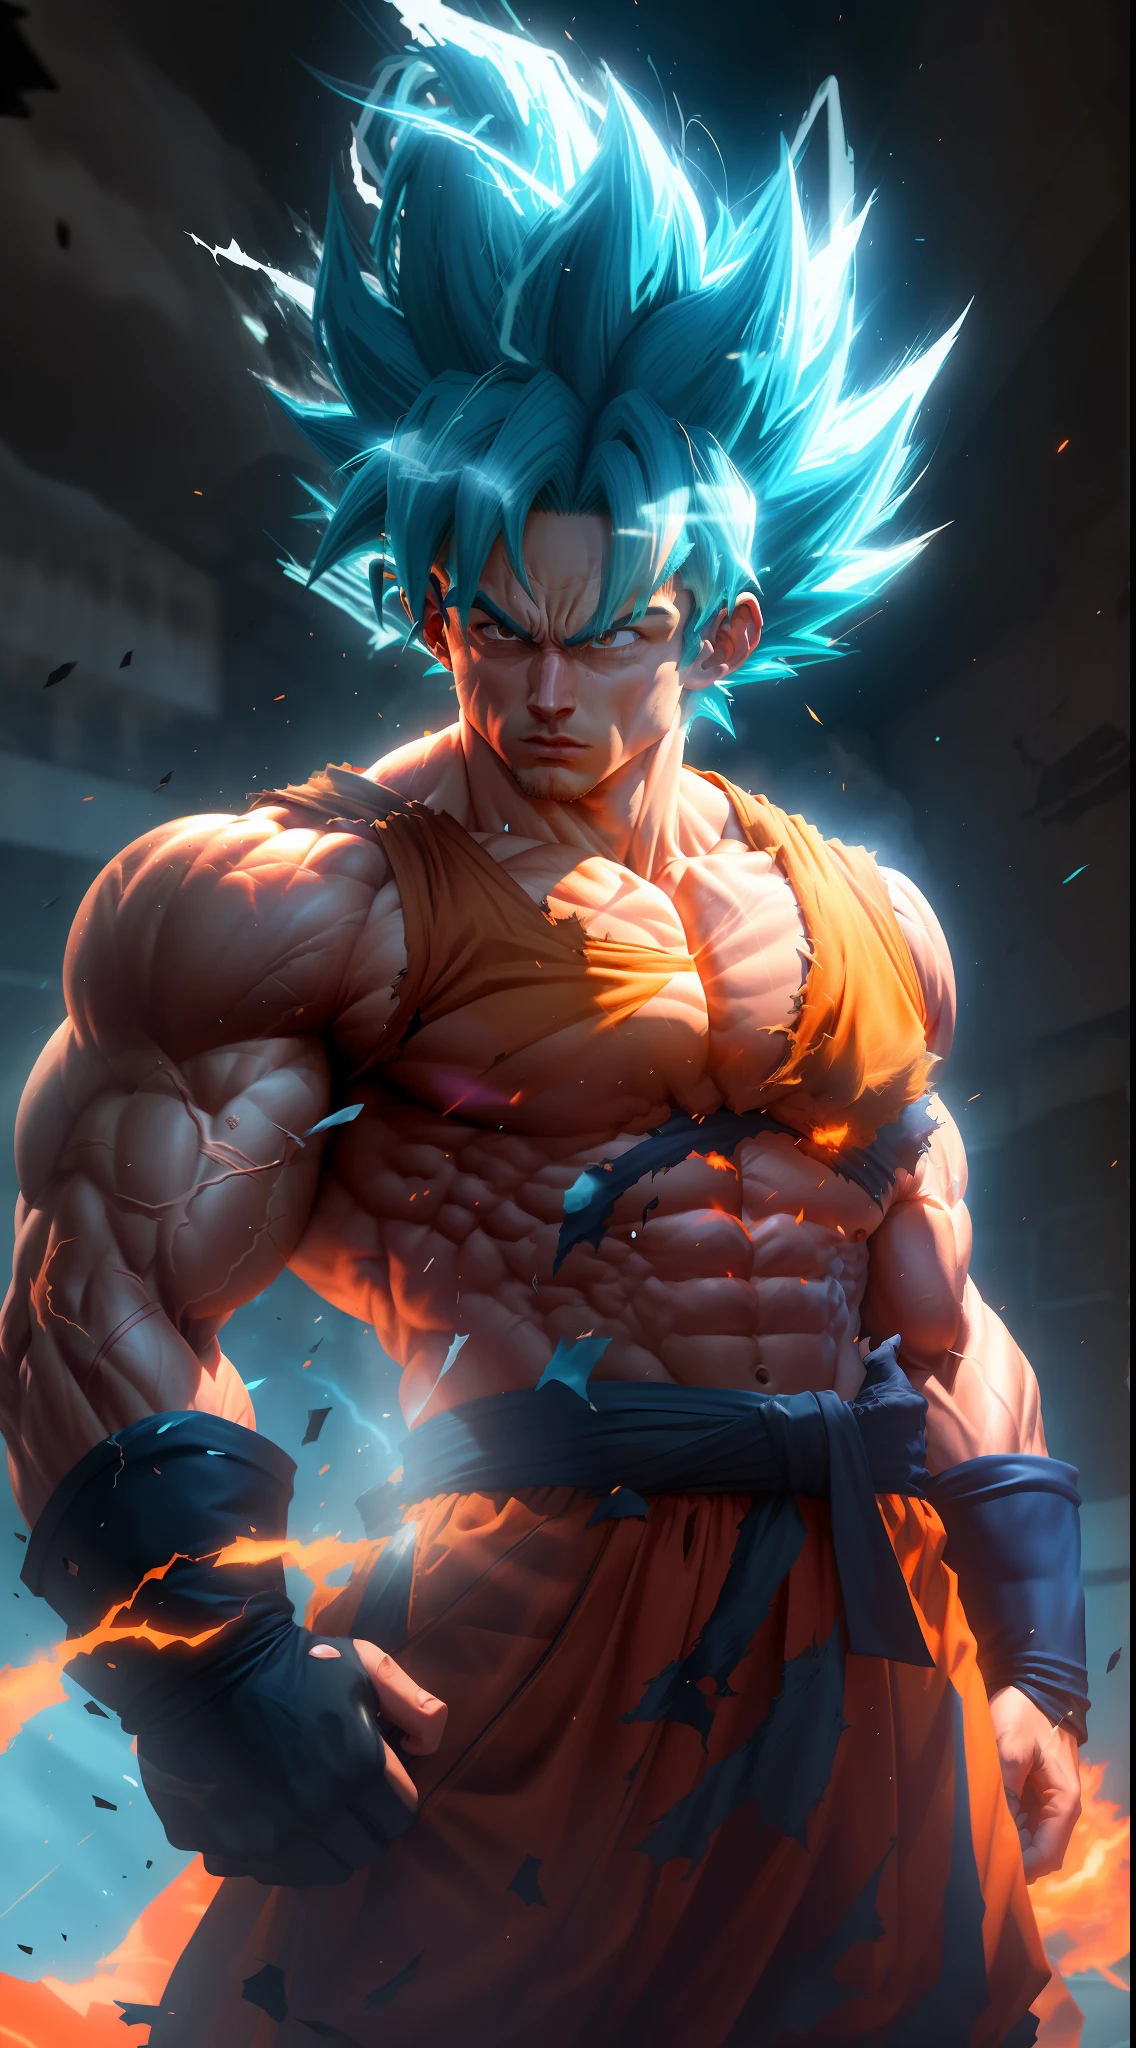 Goku Super Saiyan, Homme adulte aux cheveux bleu néon extrêmement musclés, muscles définis pleins de veines, vêtements de couleur orange foncé totalement déchirés, gants blancs, visage sérieux, définition musculaire, grandes épaules, biceps arrondis, moteur irréel 5.8k.